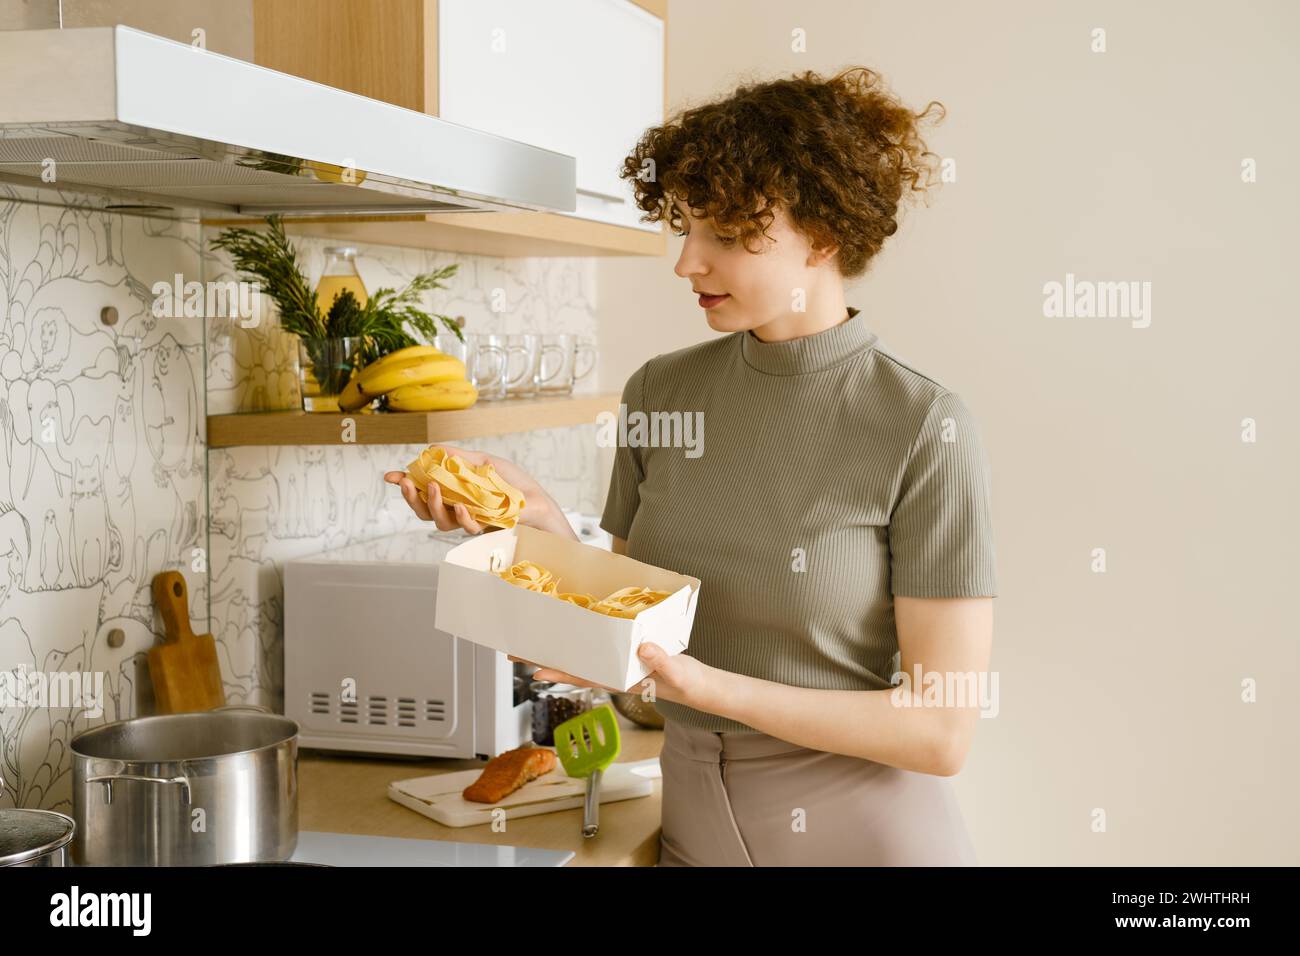 Junge Frau, die Pappardelle-Pasta in den Händen hält, über den Topf mit kochendem Wasser Stockfoto